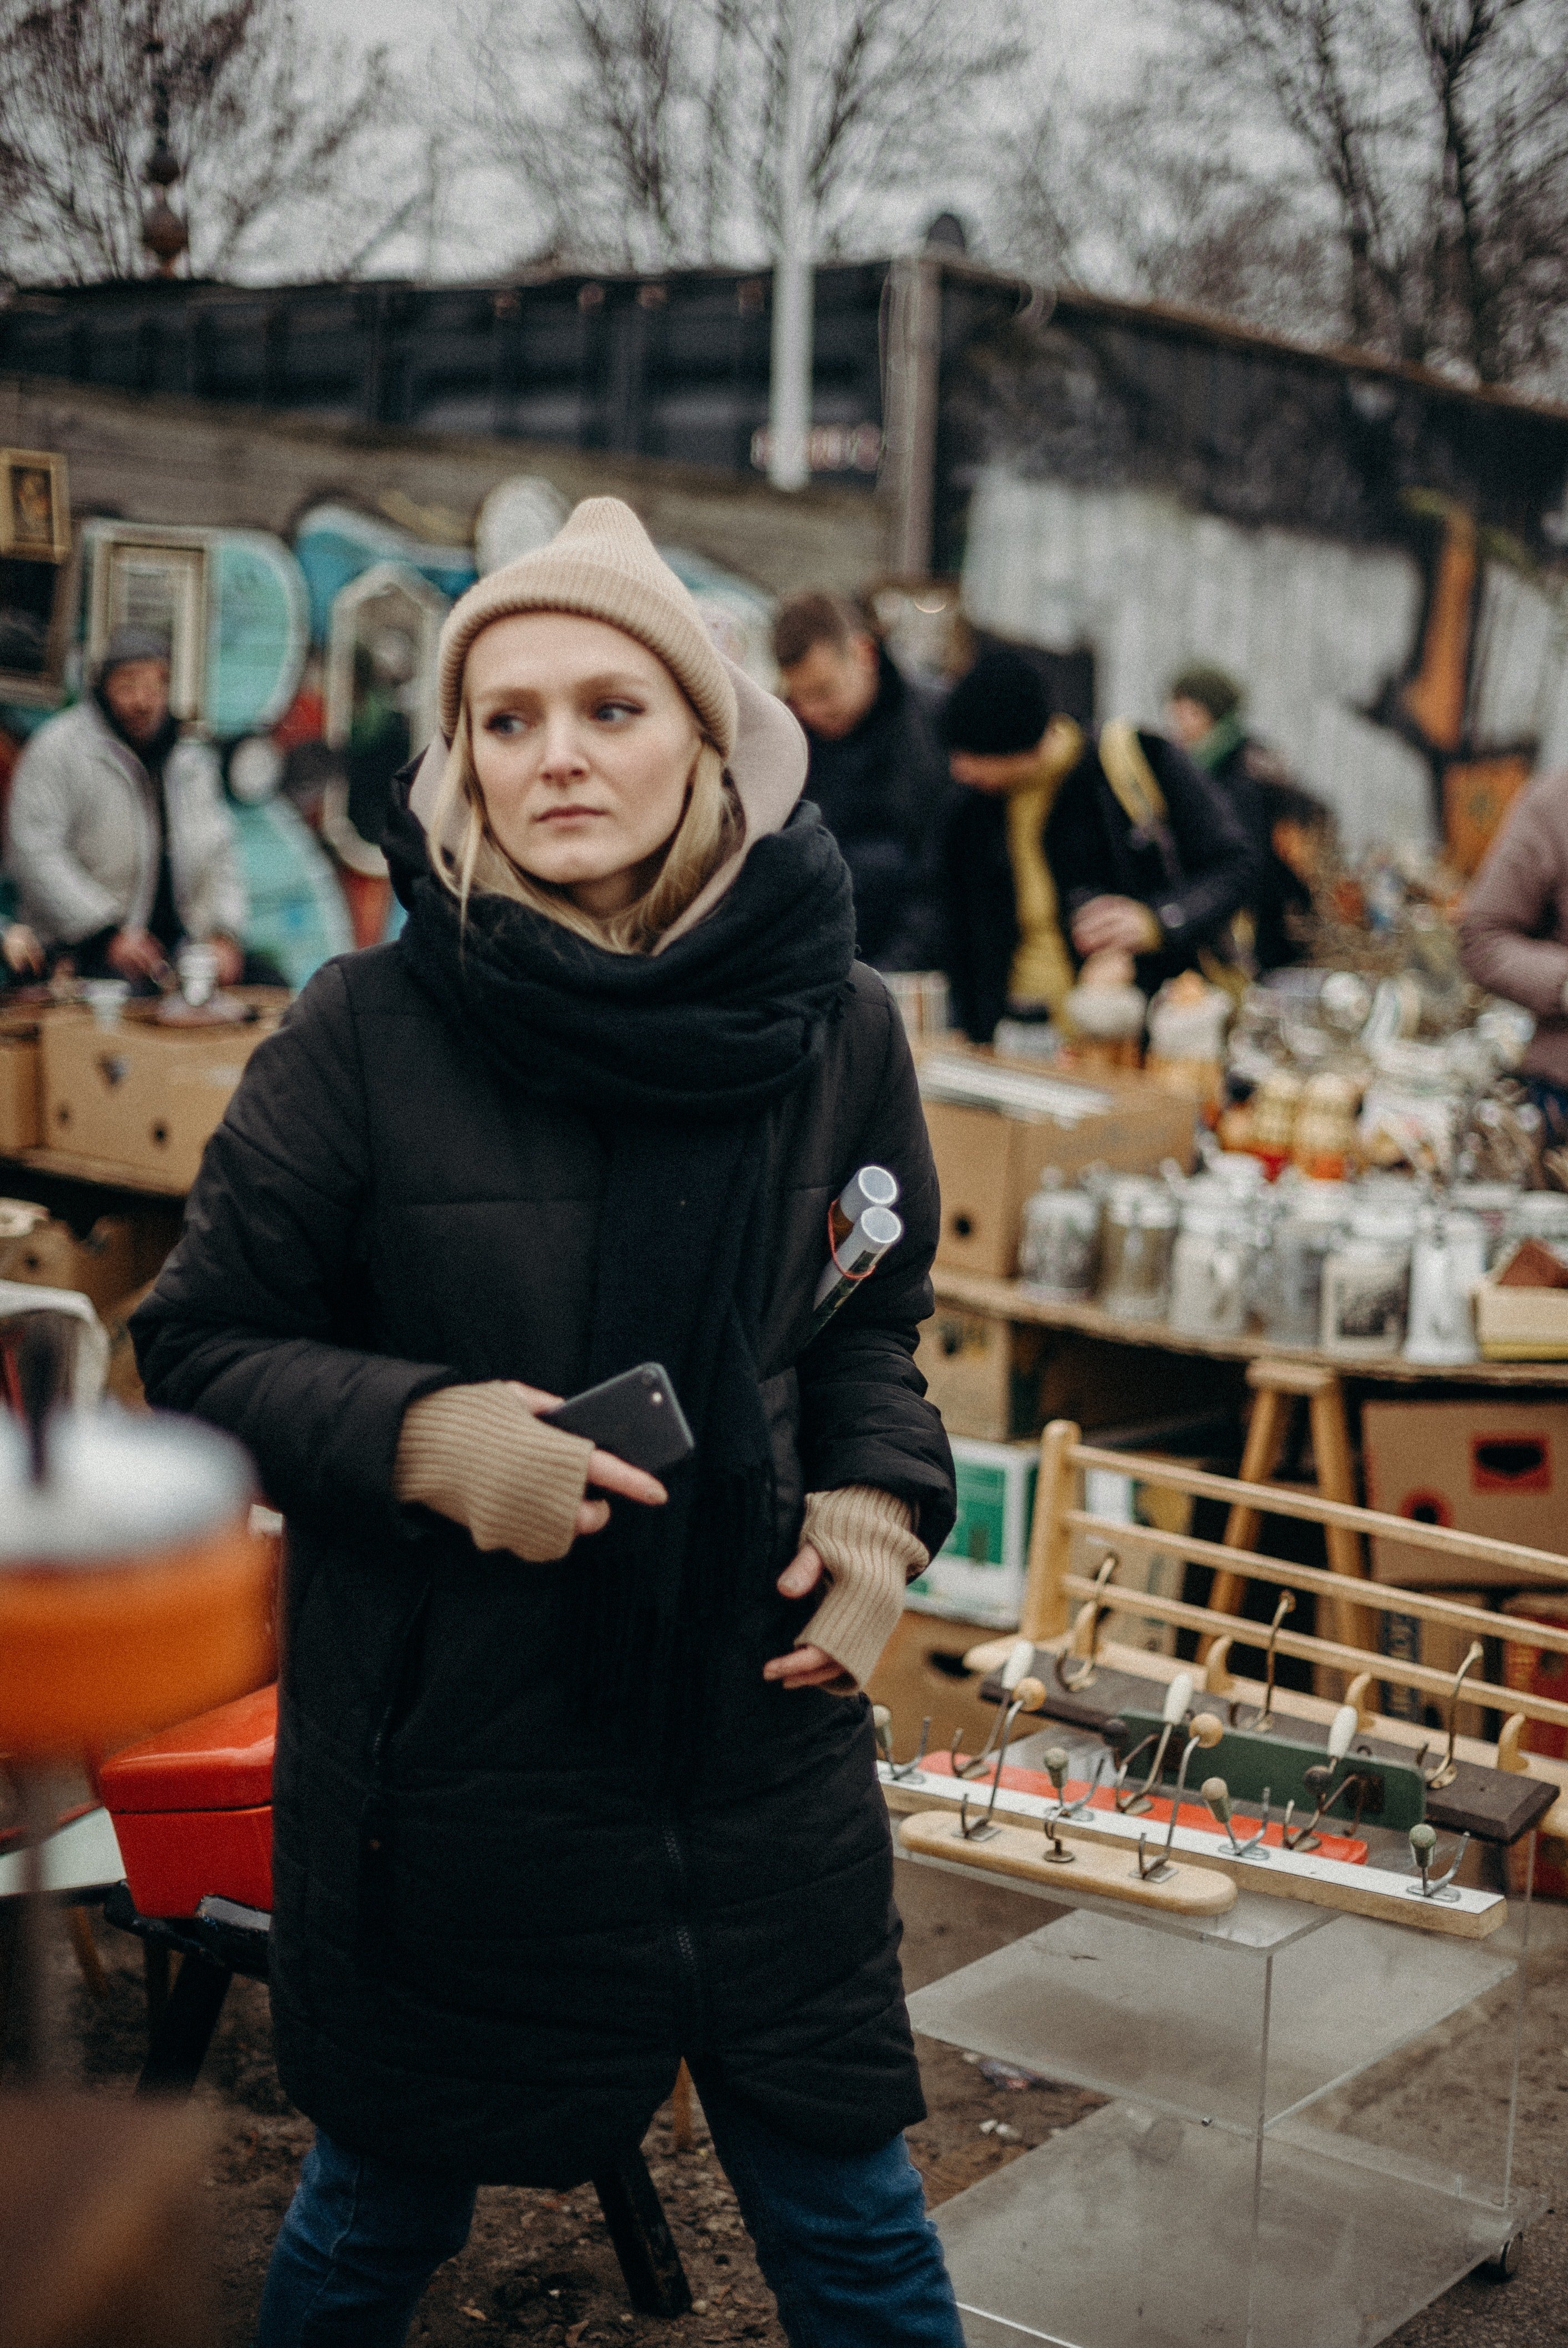 Ronja ging zurück zum Flohmarkt, um den Verkäufer des Eies zu suchen. | Quelle: Pexels